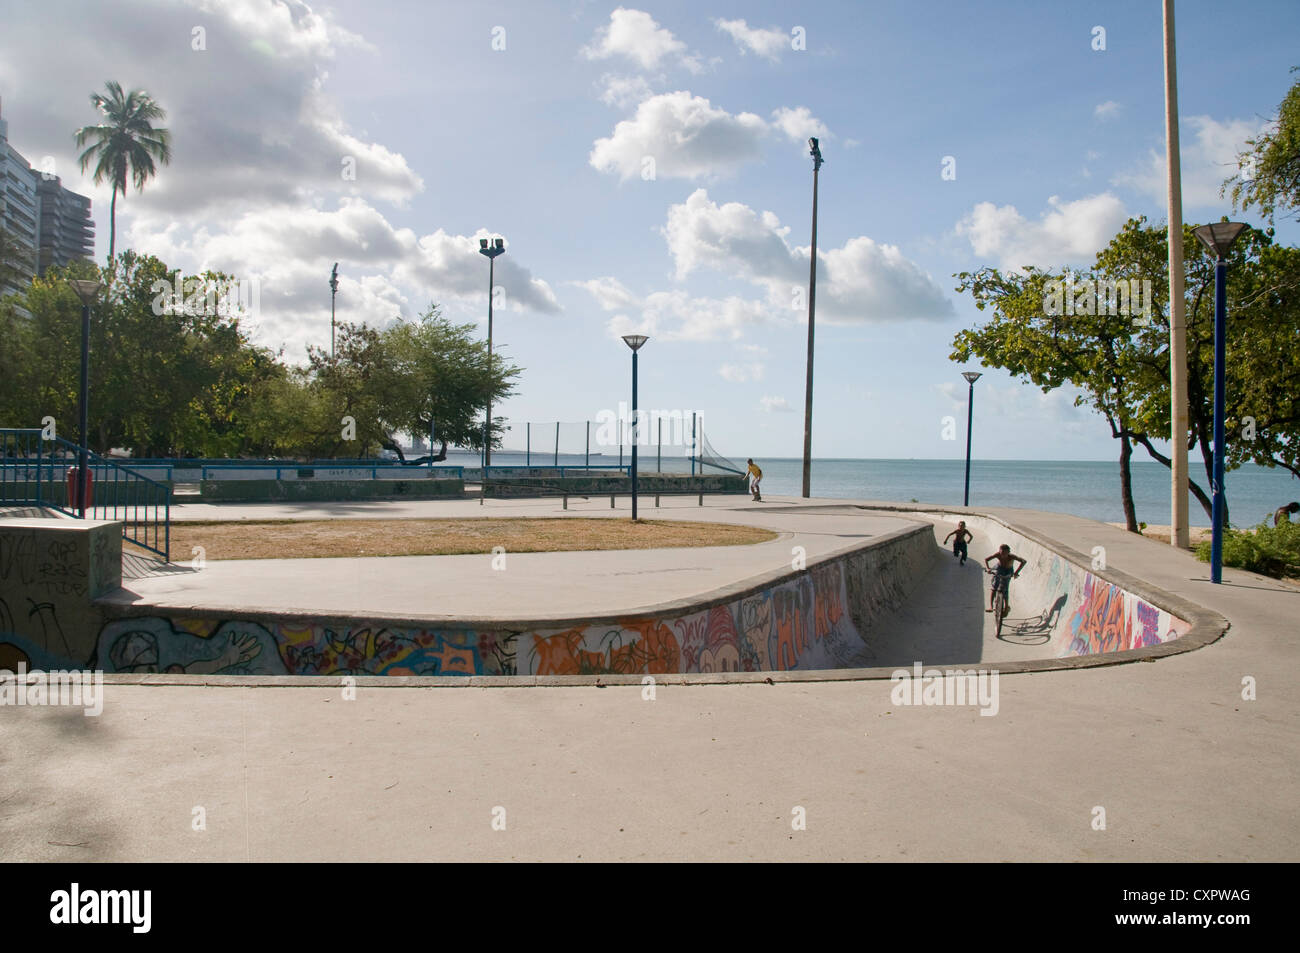 skate park - Avenida Beira Mar - Fortaleza, Ceará, Brazil Stock Photo